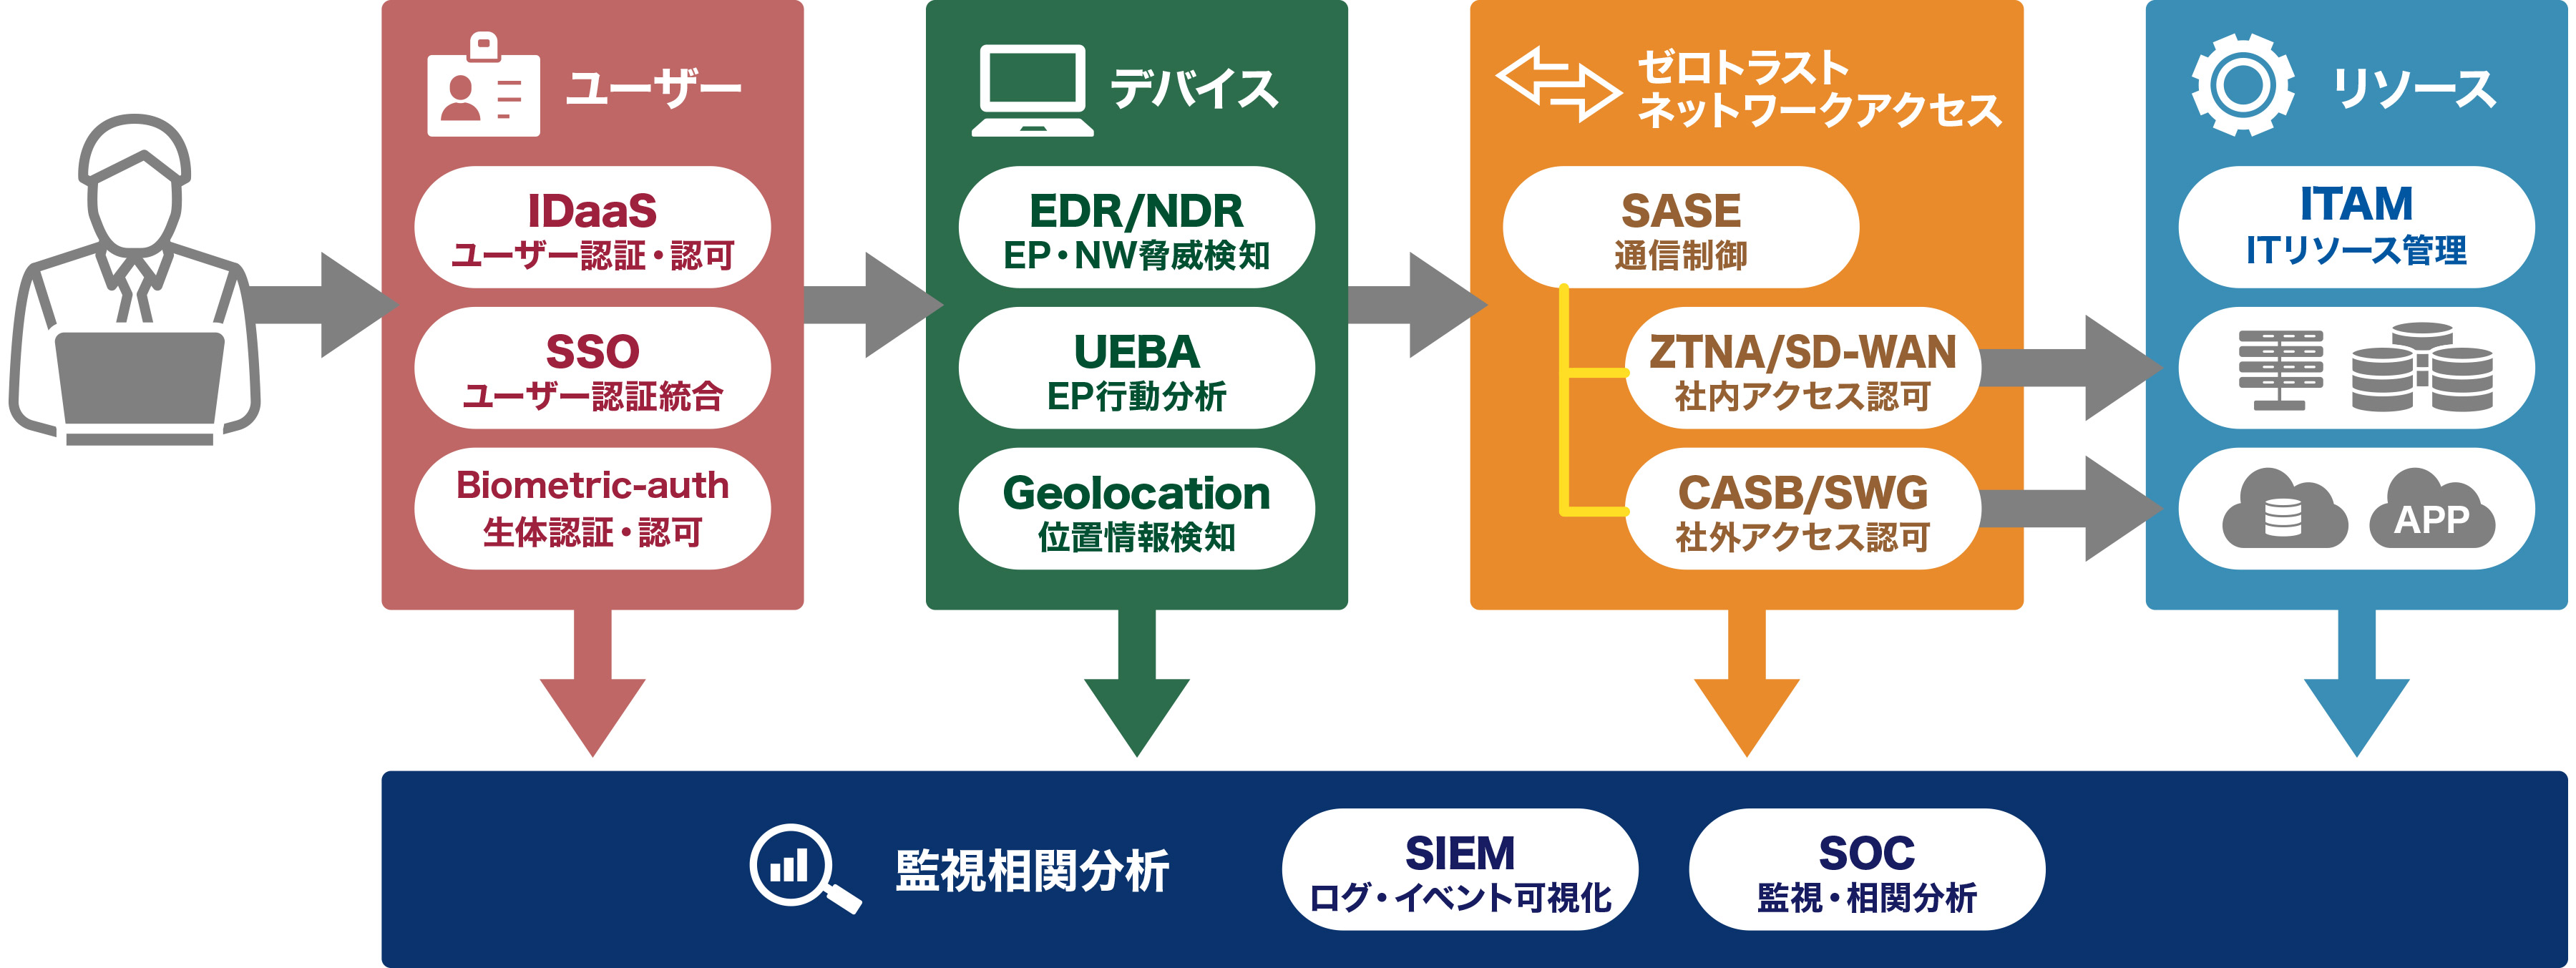 
					ユーザー
					デバイス
					ゼロトラスト ネットワークアクセス
					リソース
					監視相関分析
					SIEM
					ログ・イベント可視化
					SOC
					監視・相関分析				
				